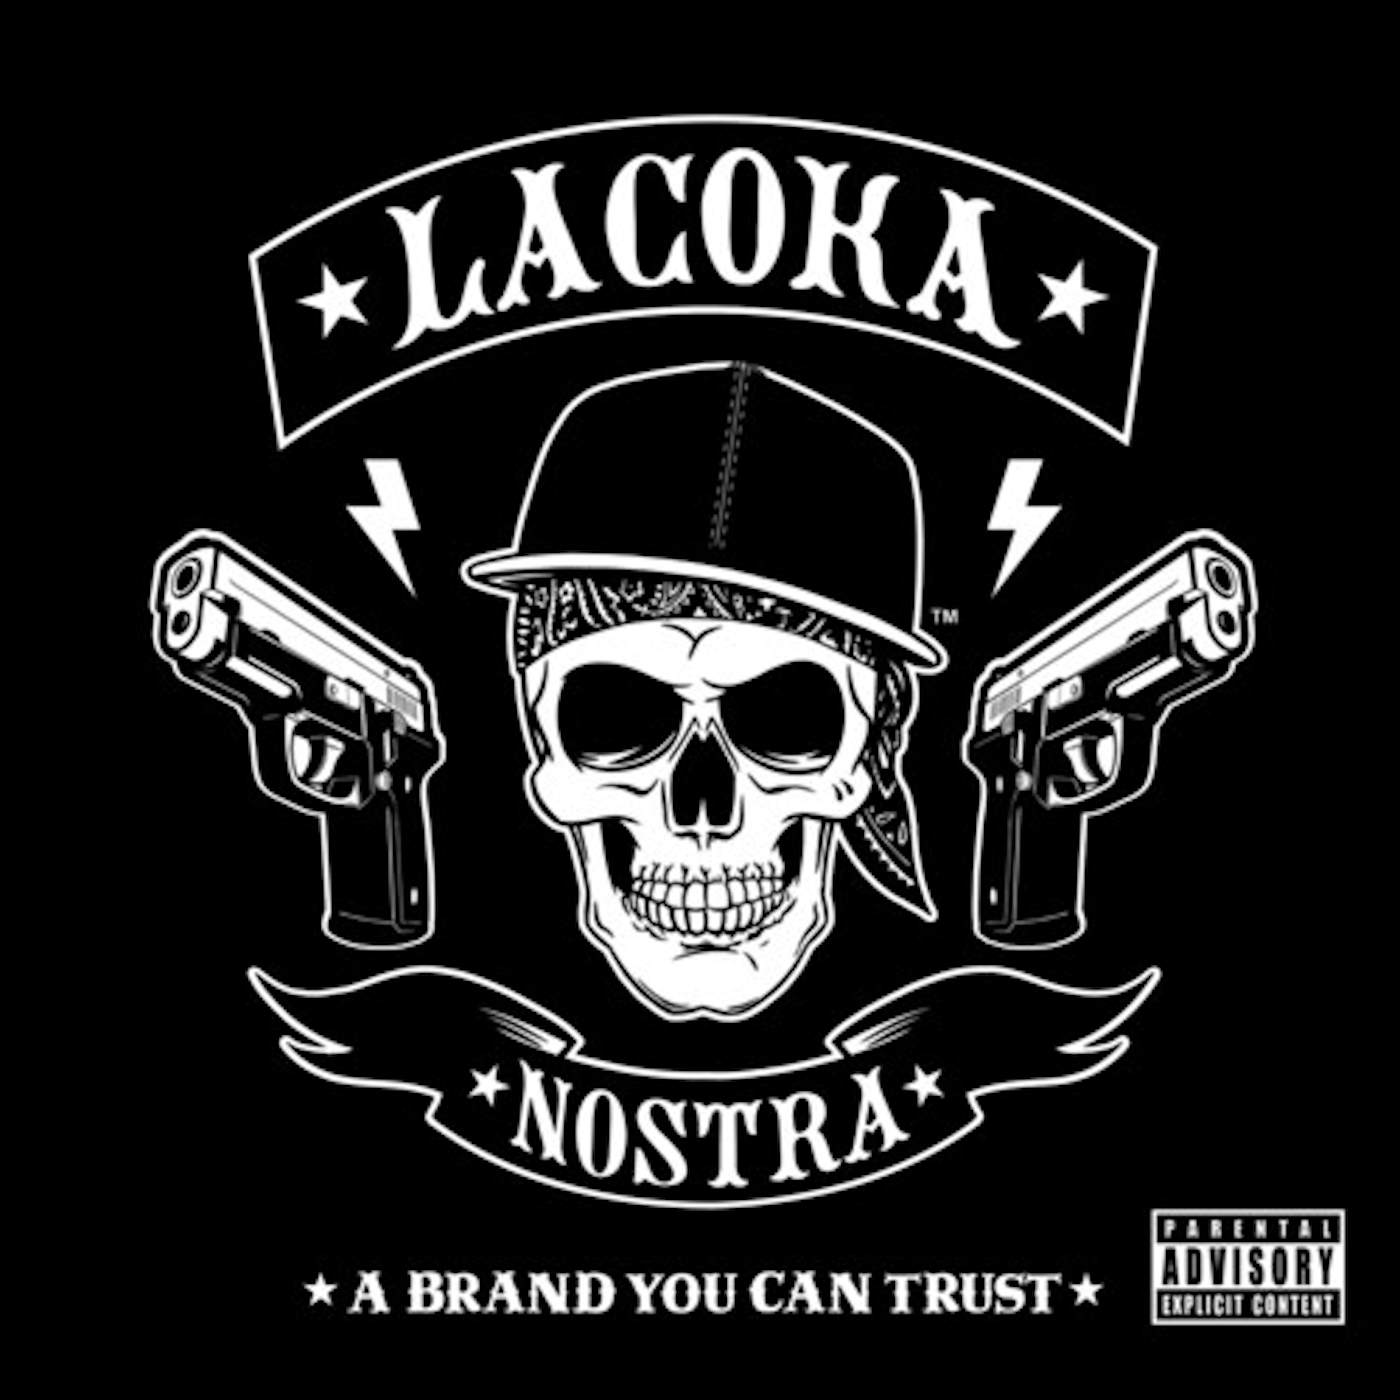 La Coka Nostra BRAND YOU CAN TRUST Vinyl Record